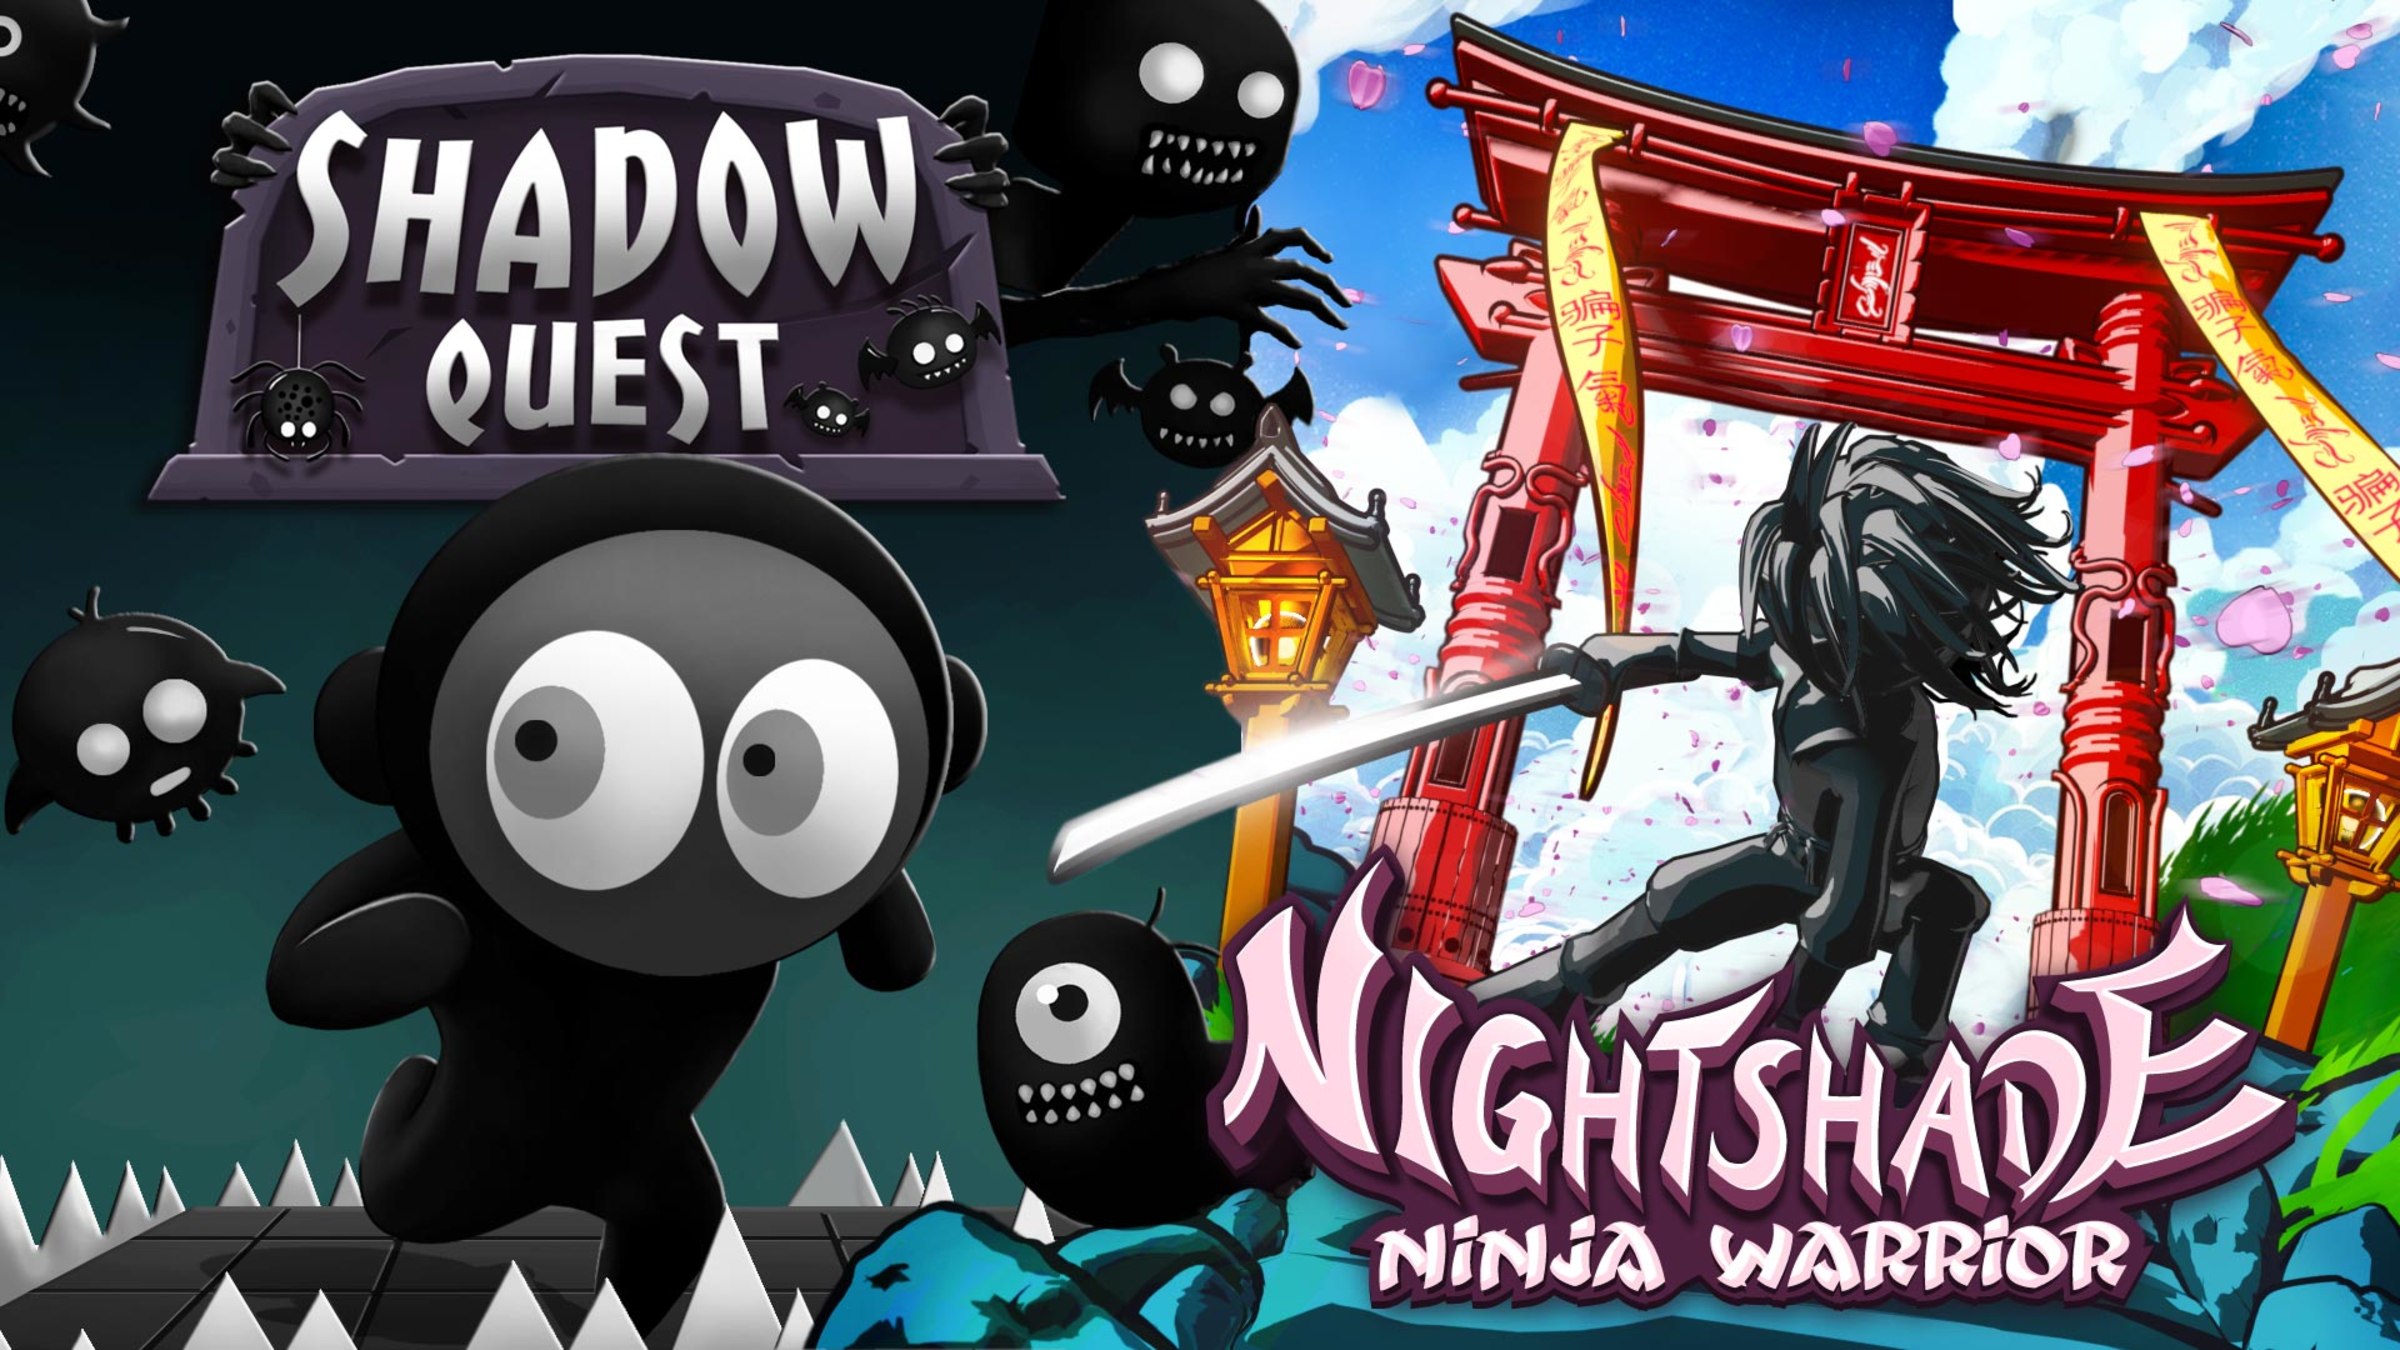 Shadow Bundle: Shadow Quest and Nightshade Ninja Warrior for